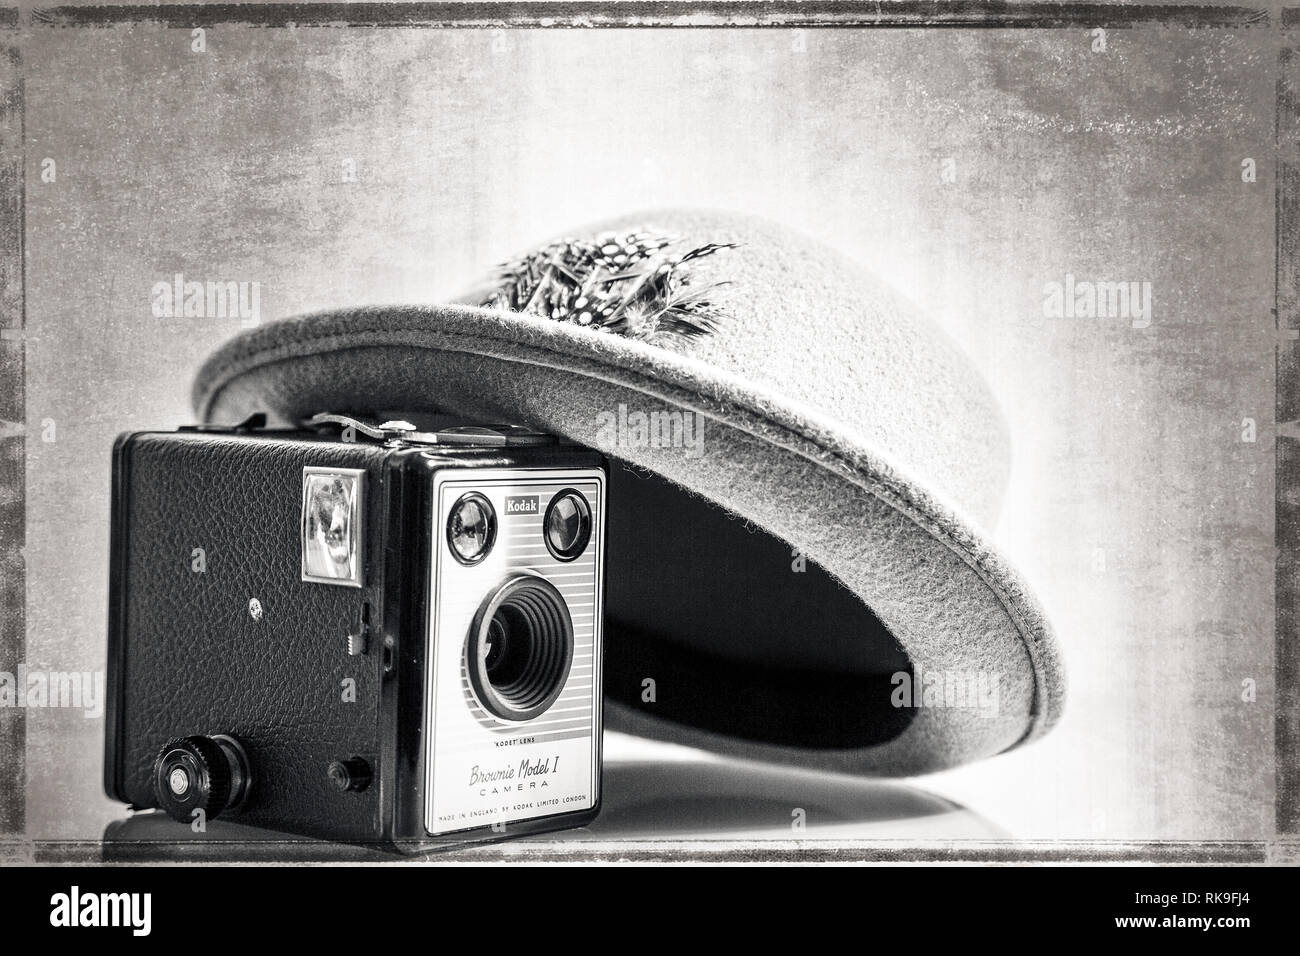 Black & White de cerca de 1950 sombrero Fedora artísticamente inclinada en vintage Caja cámara Kodak Brownie (modelo 1) del mismo período. Efecto de edad antecedentes. Foto de stock